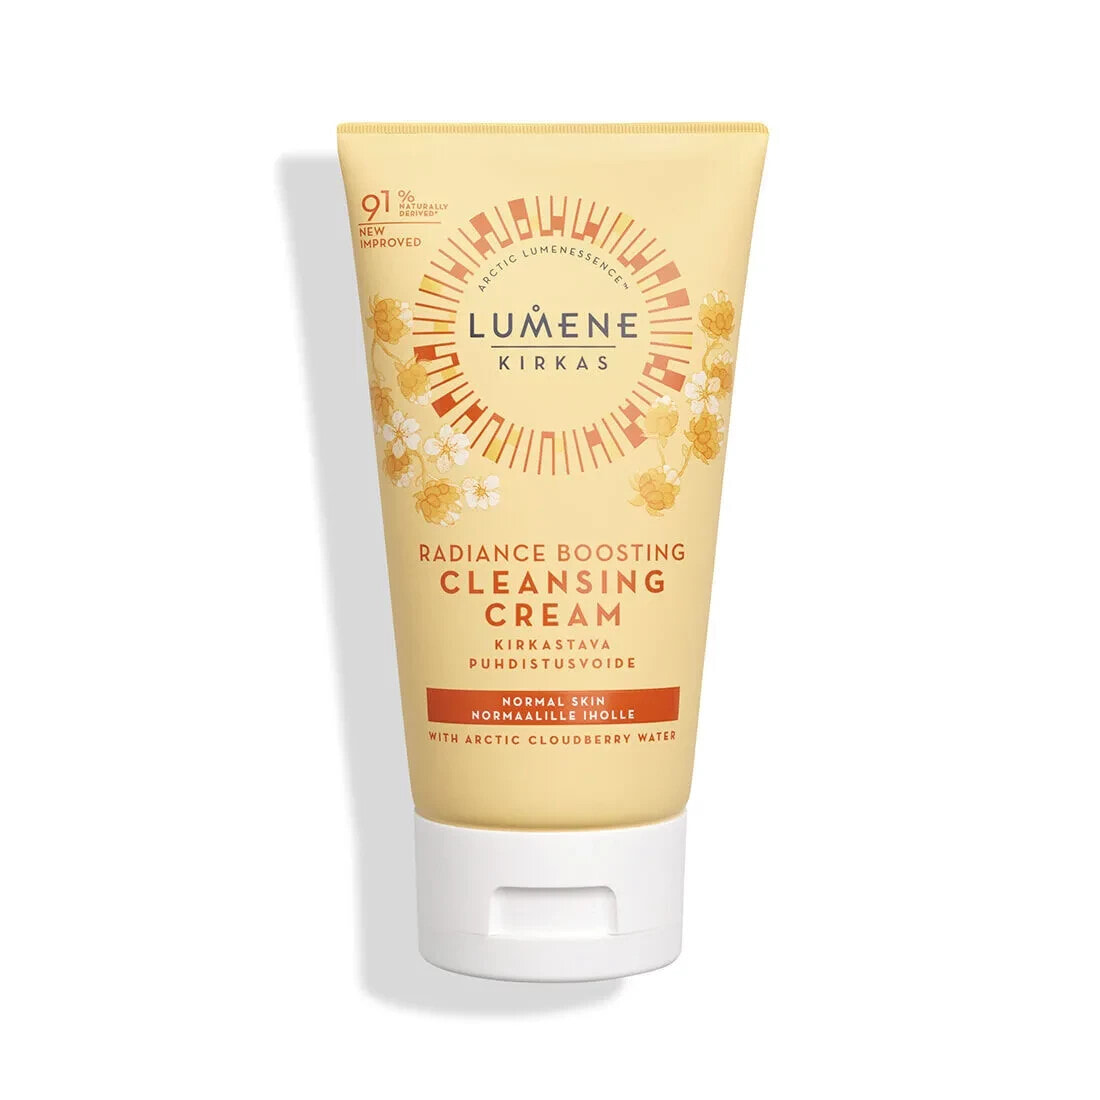 Lumene Radiance Boosting Cleansing Cream Придающий сияние очищающий крем для умывания для нормальной кожи 150 мл